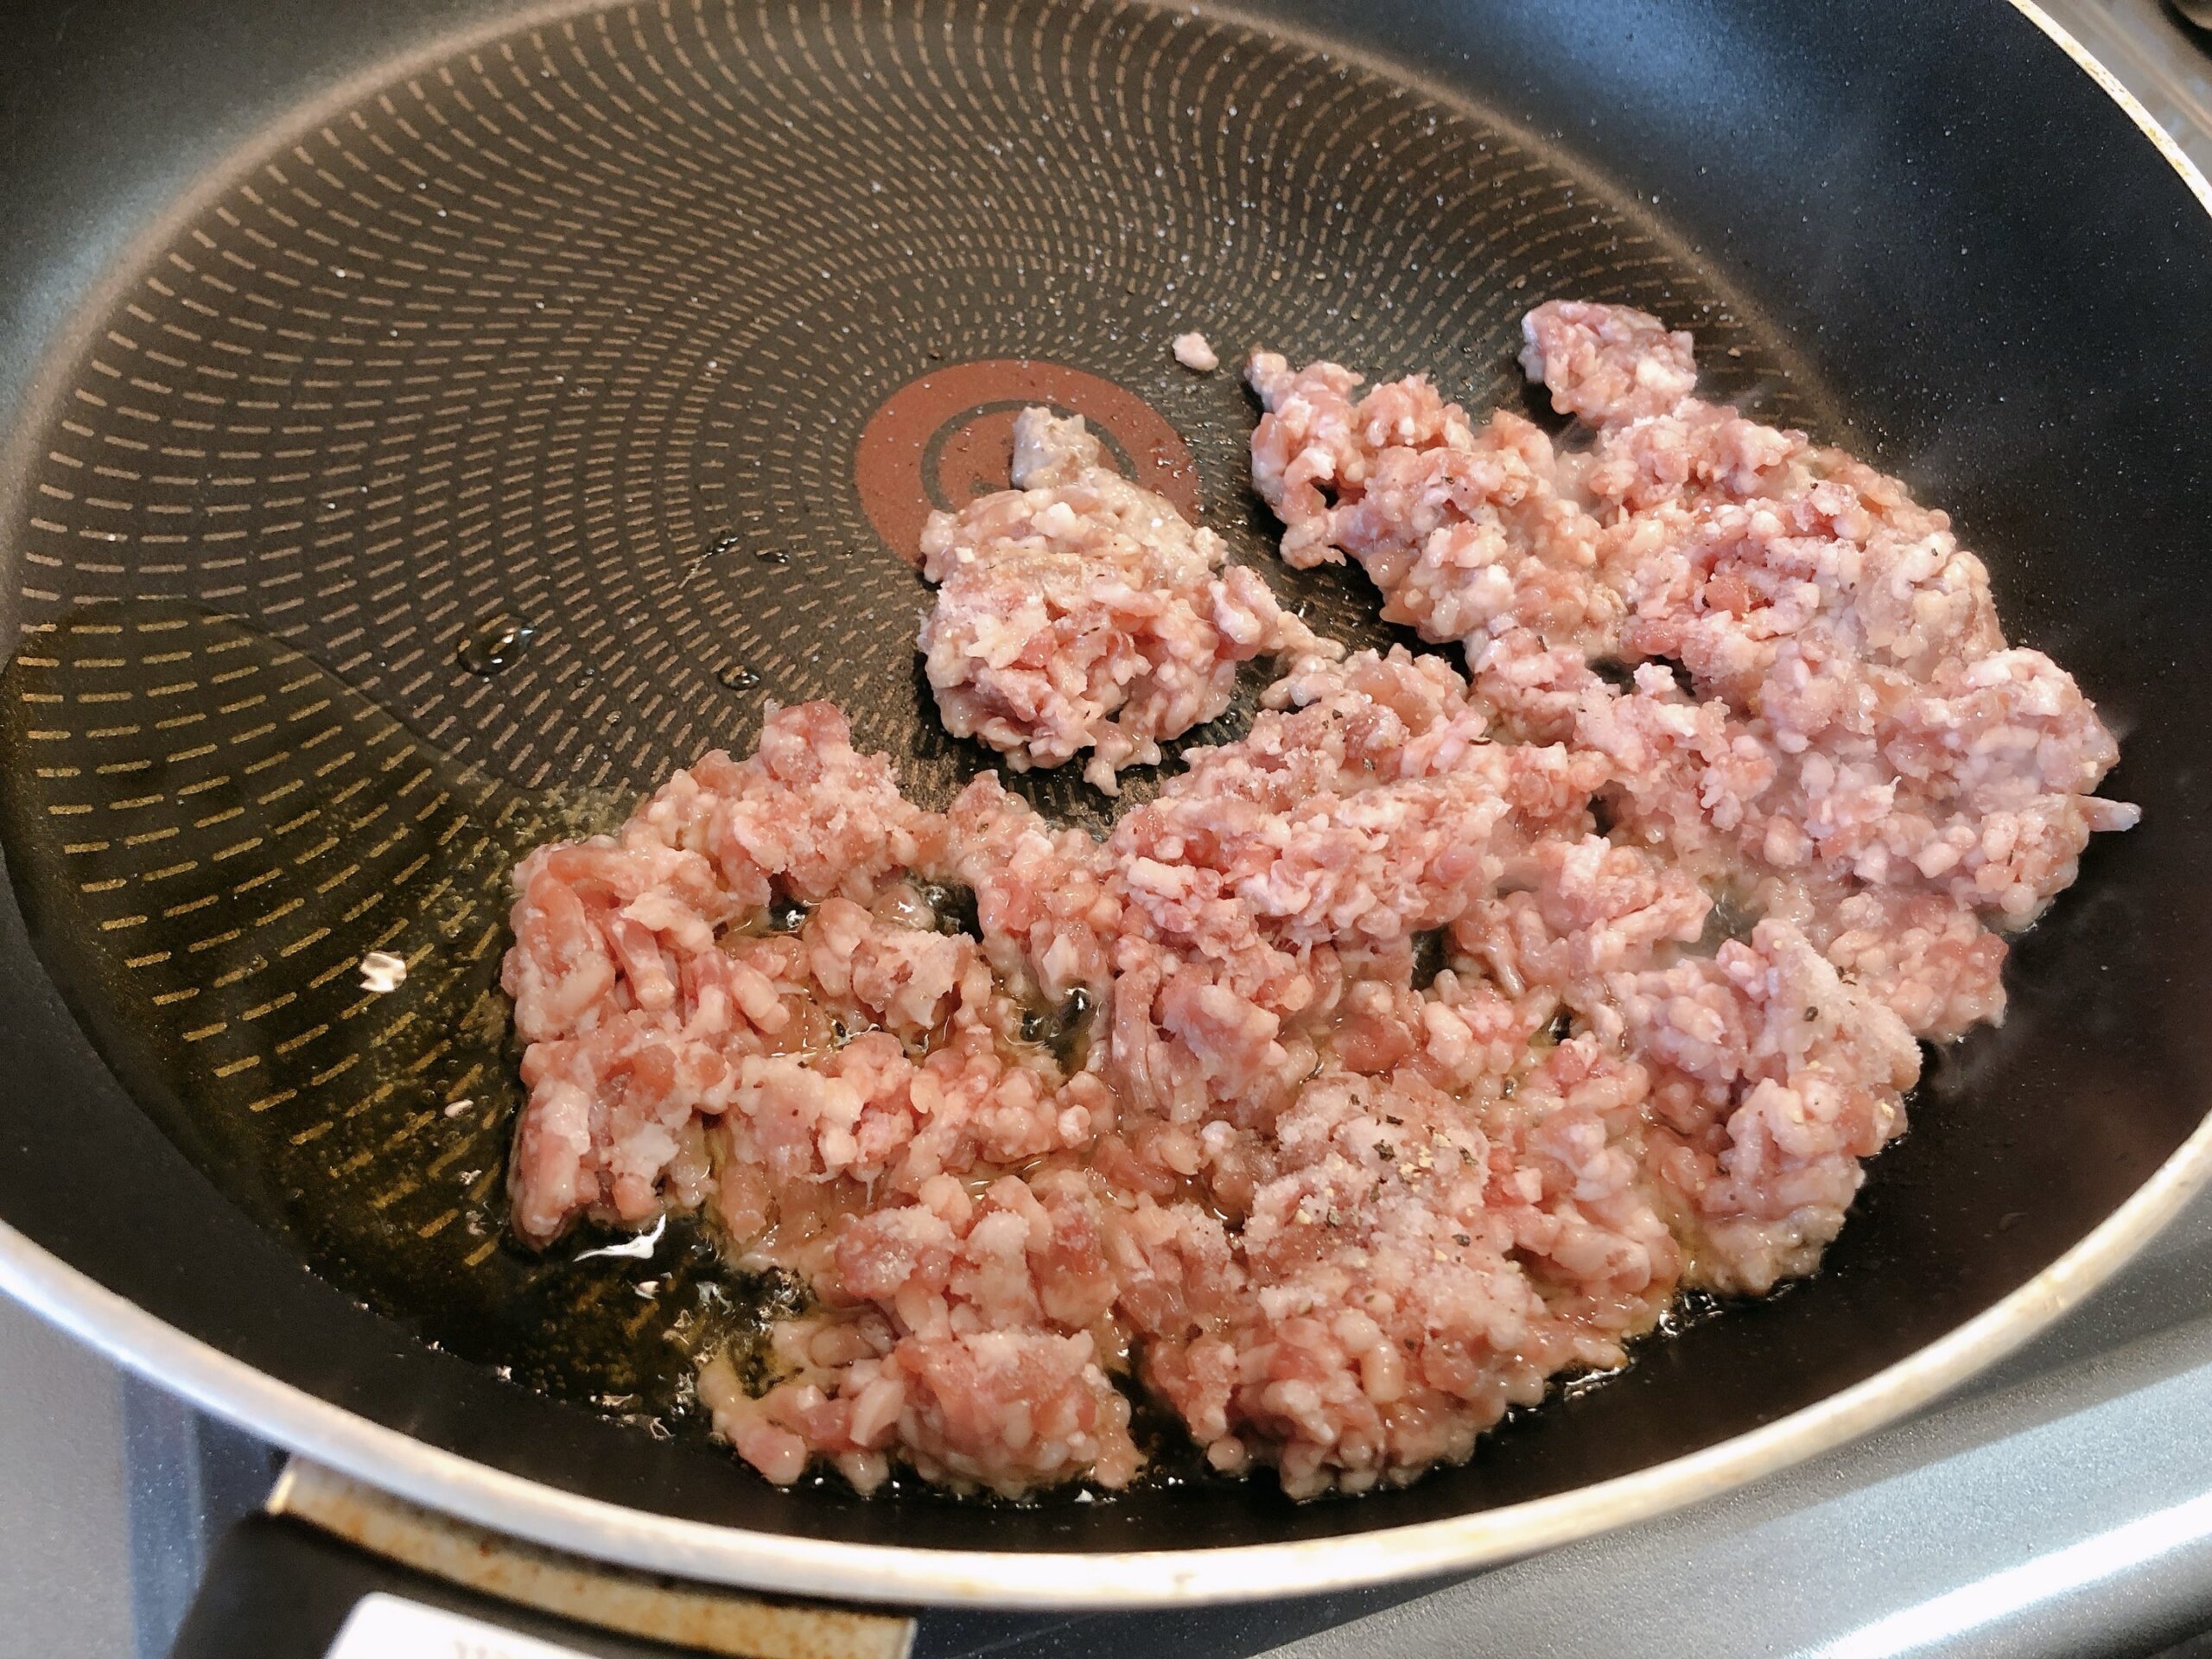 熱したフライパンにミンチ肉を入れた状態の画像です。